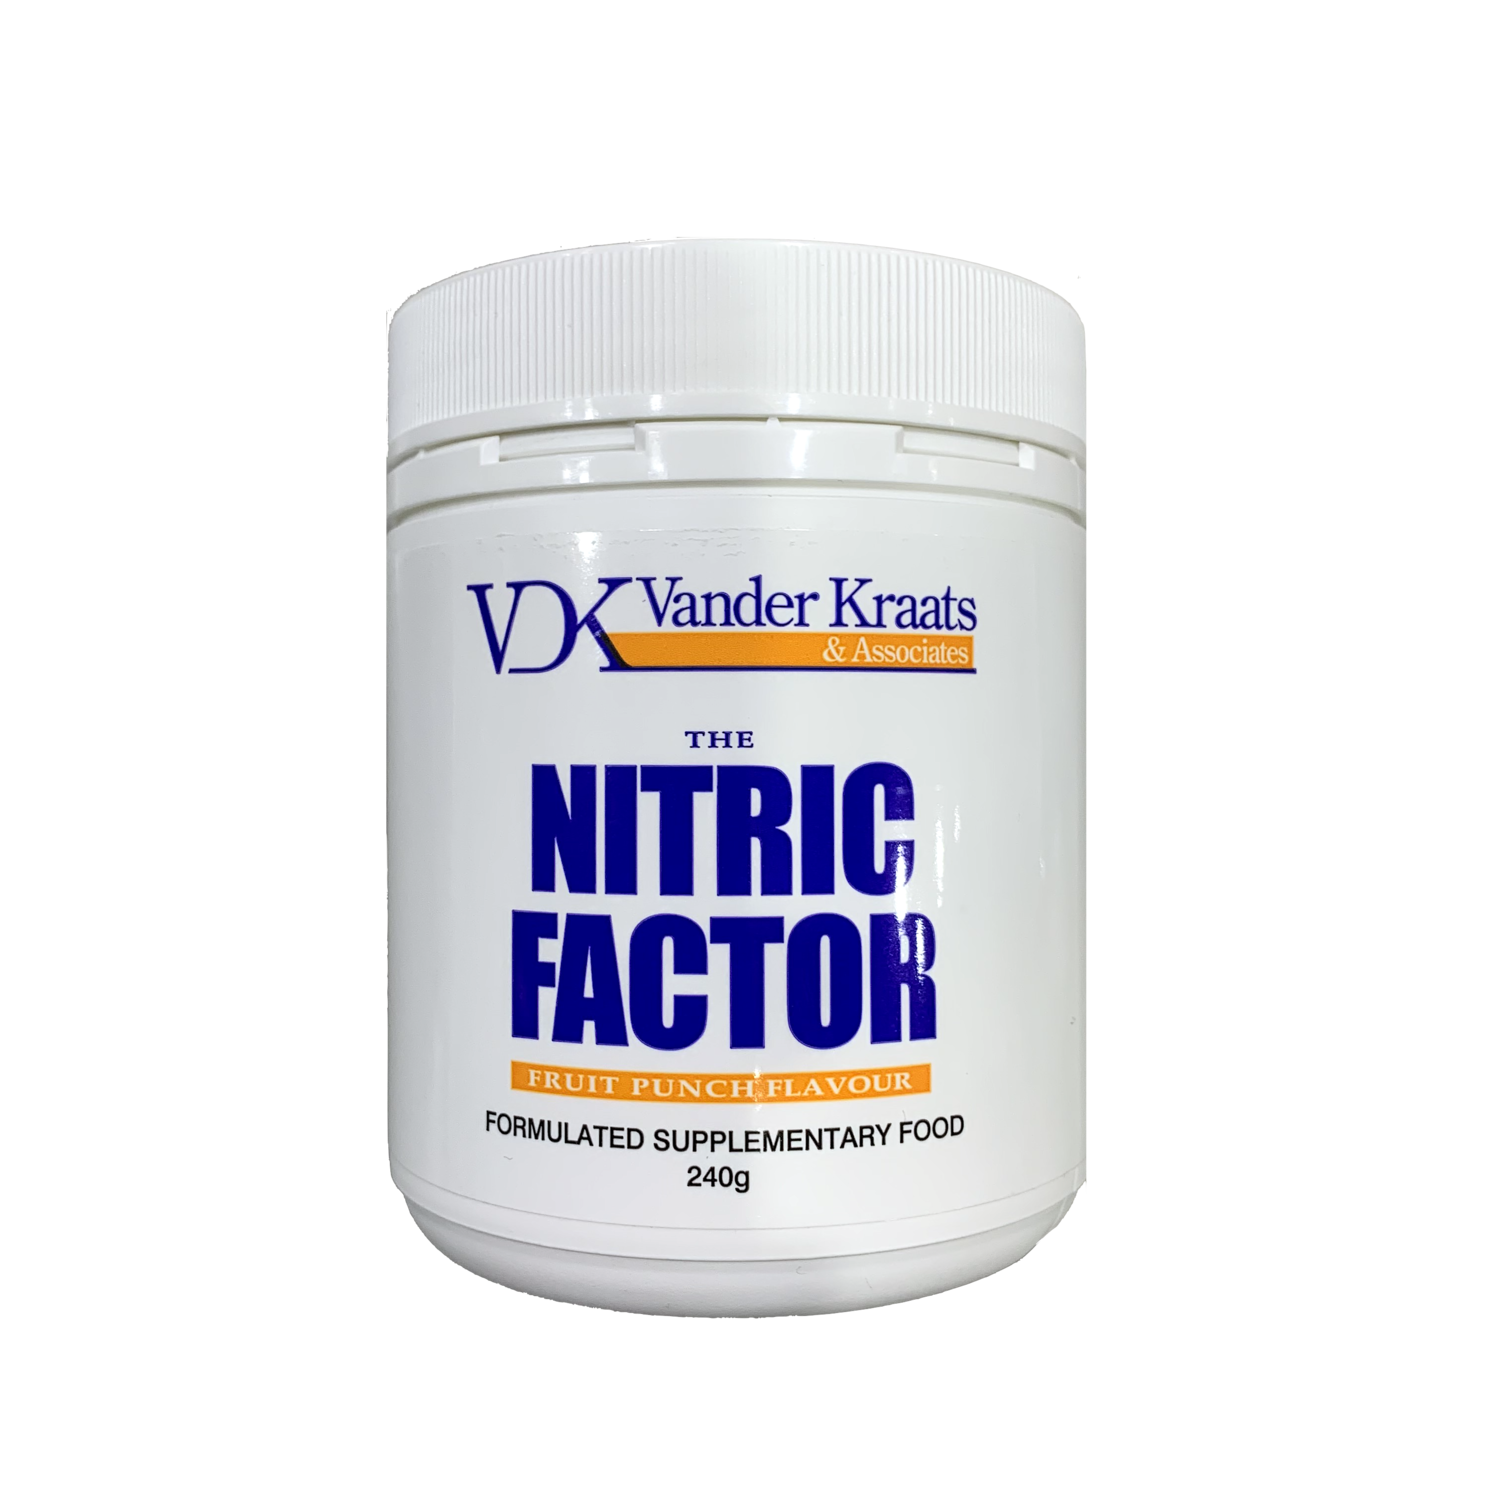 VDK Vander Kraats The Nitric Factor